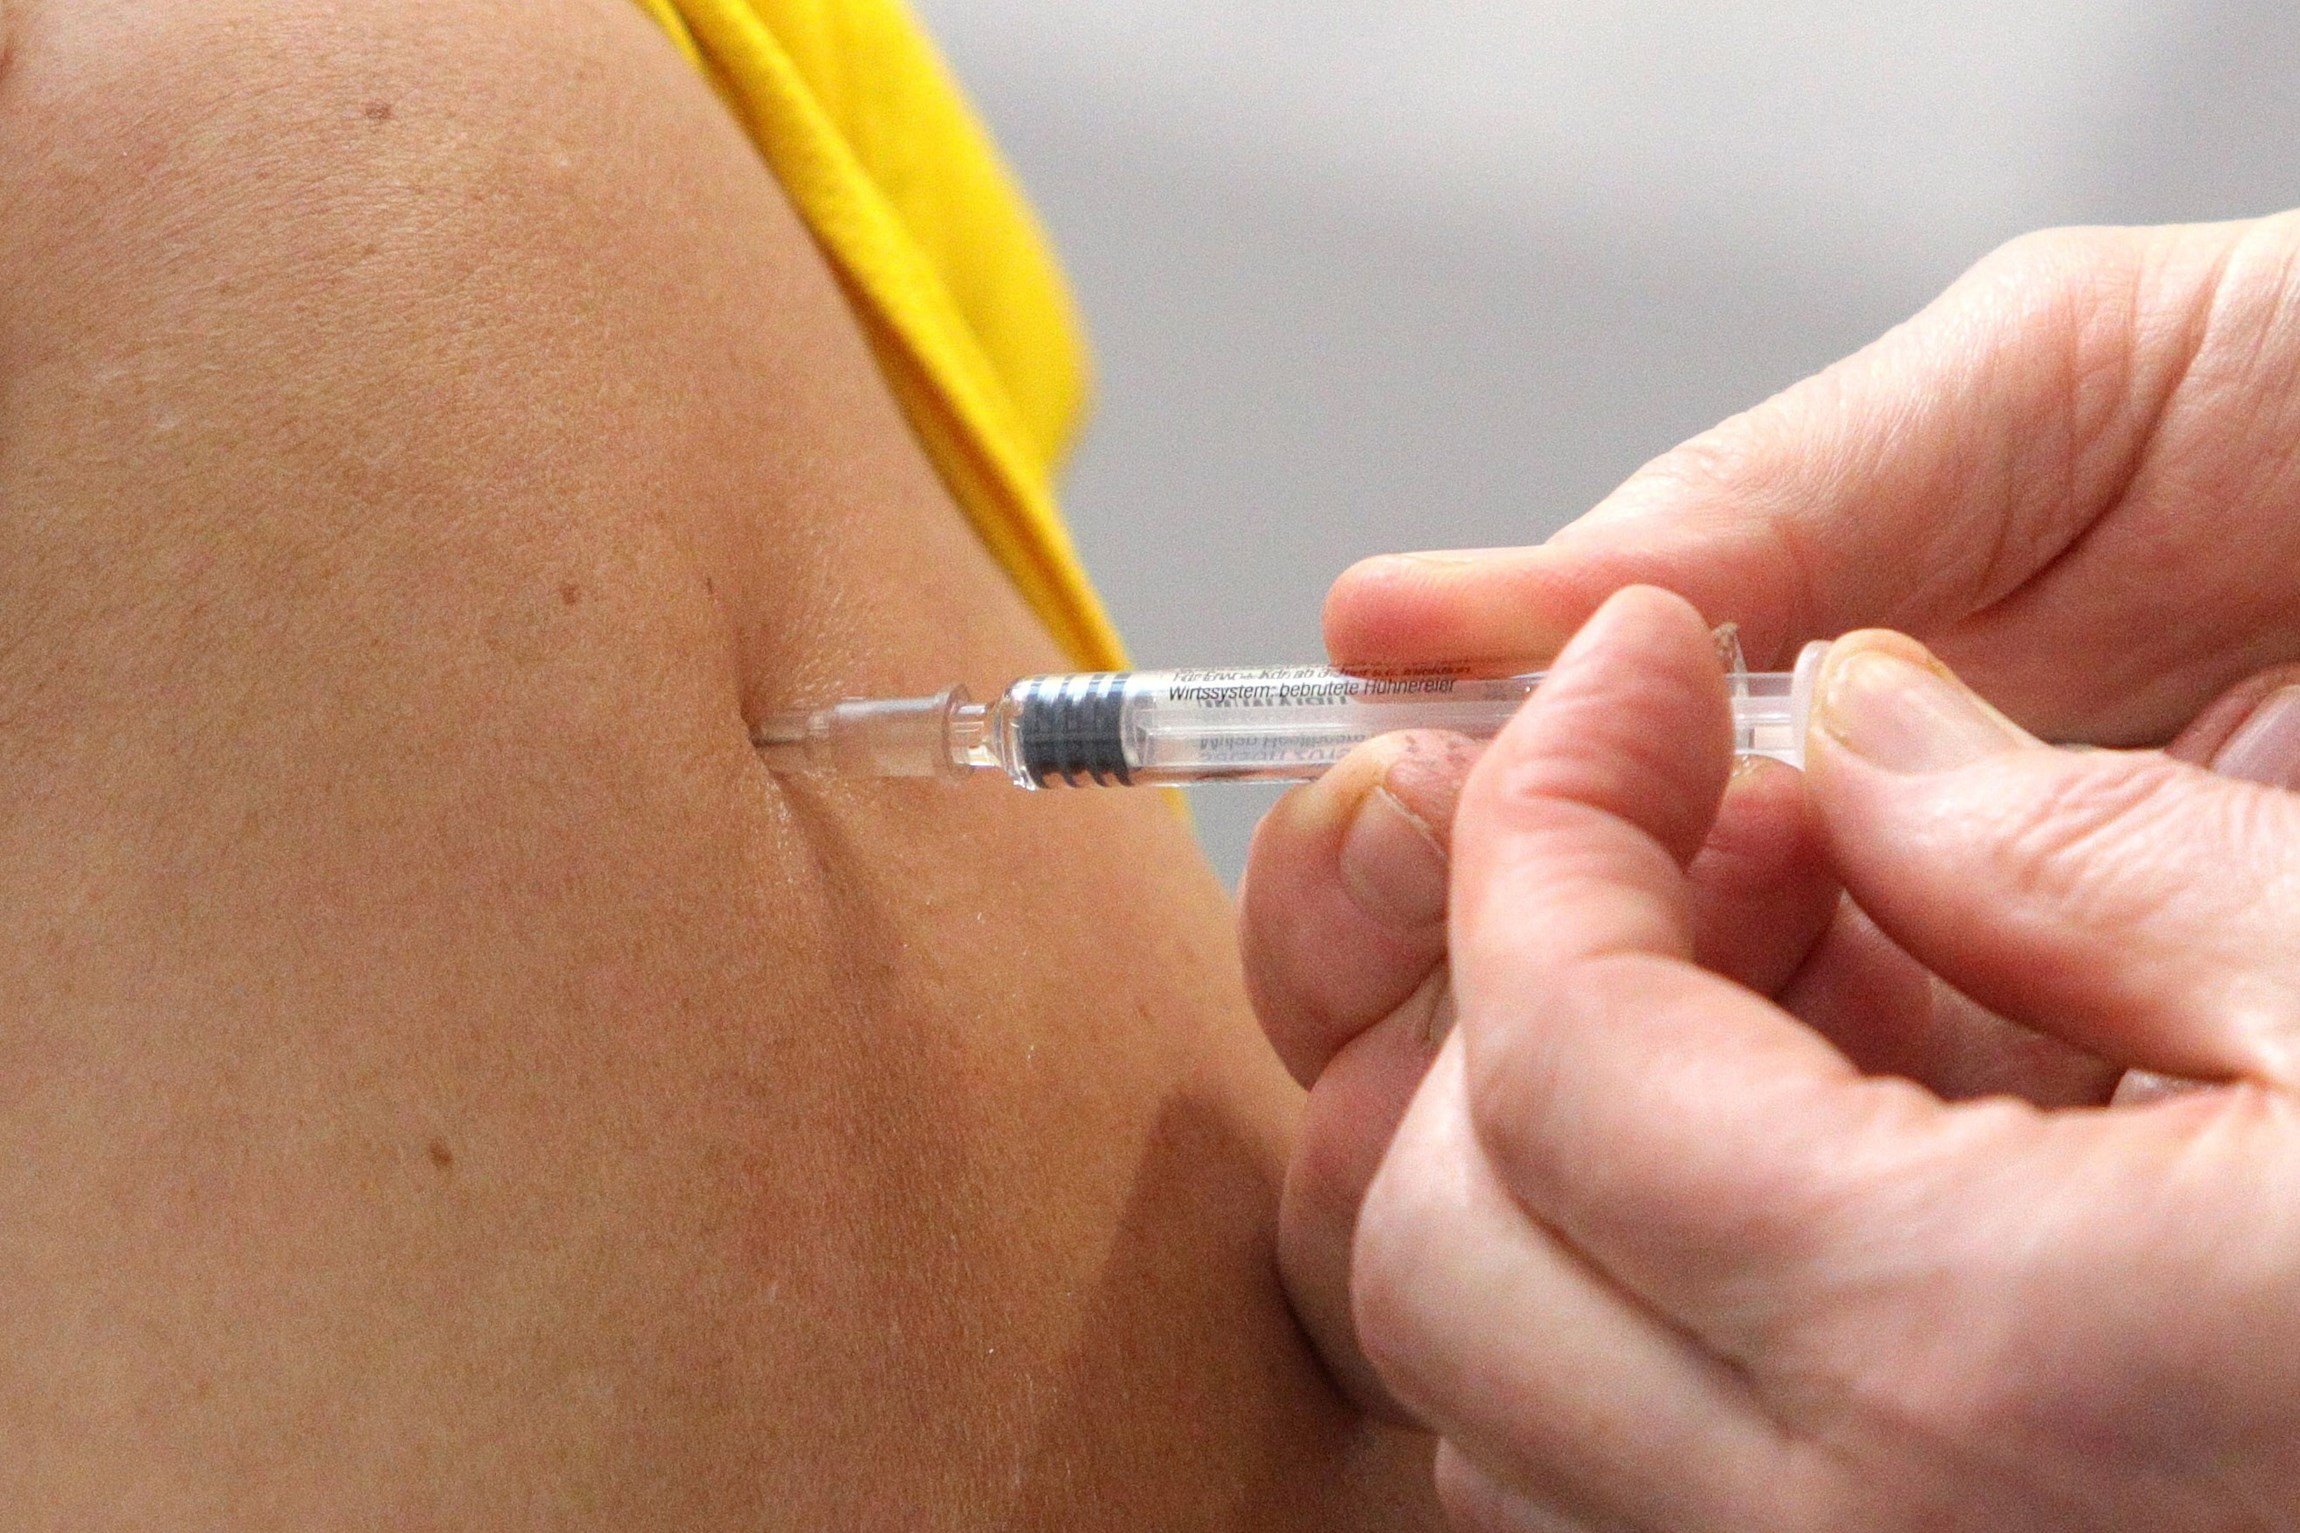 Oxford reanuda los ensayos de su vacuna contra el coronavirus